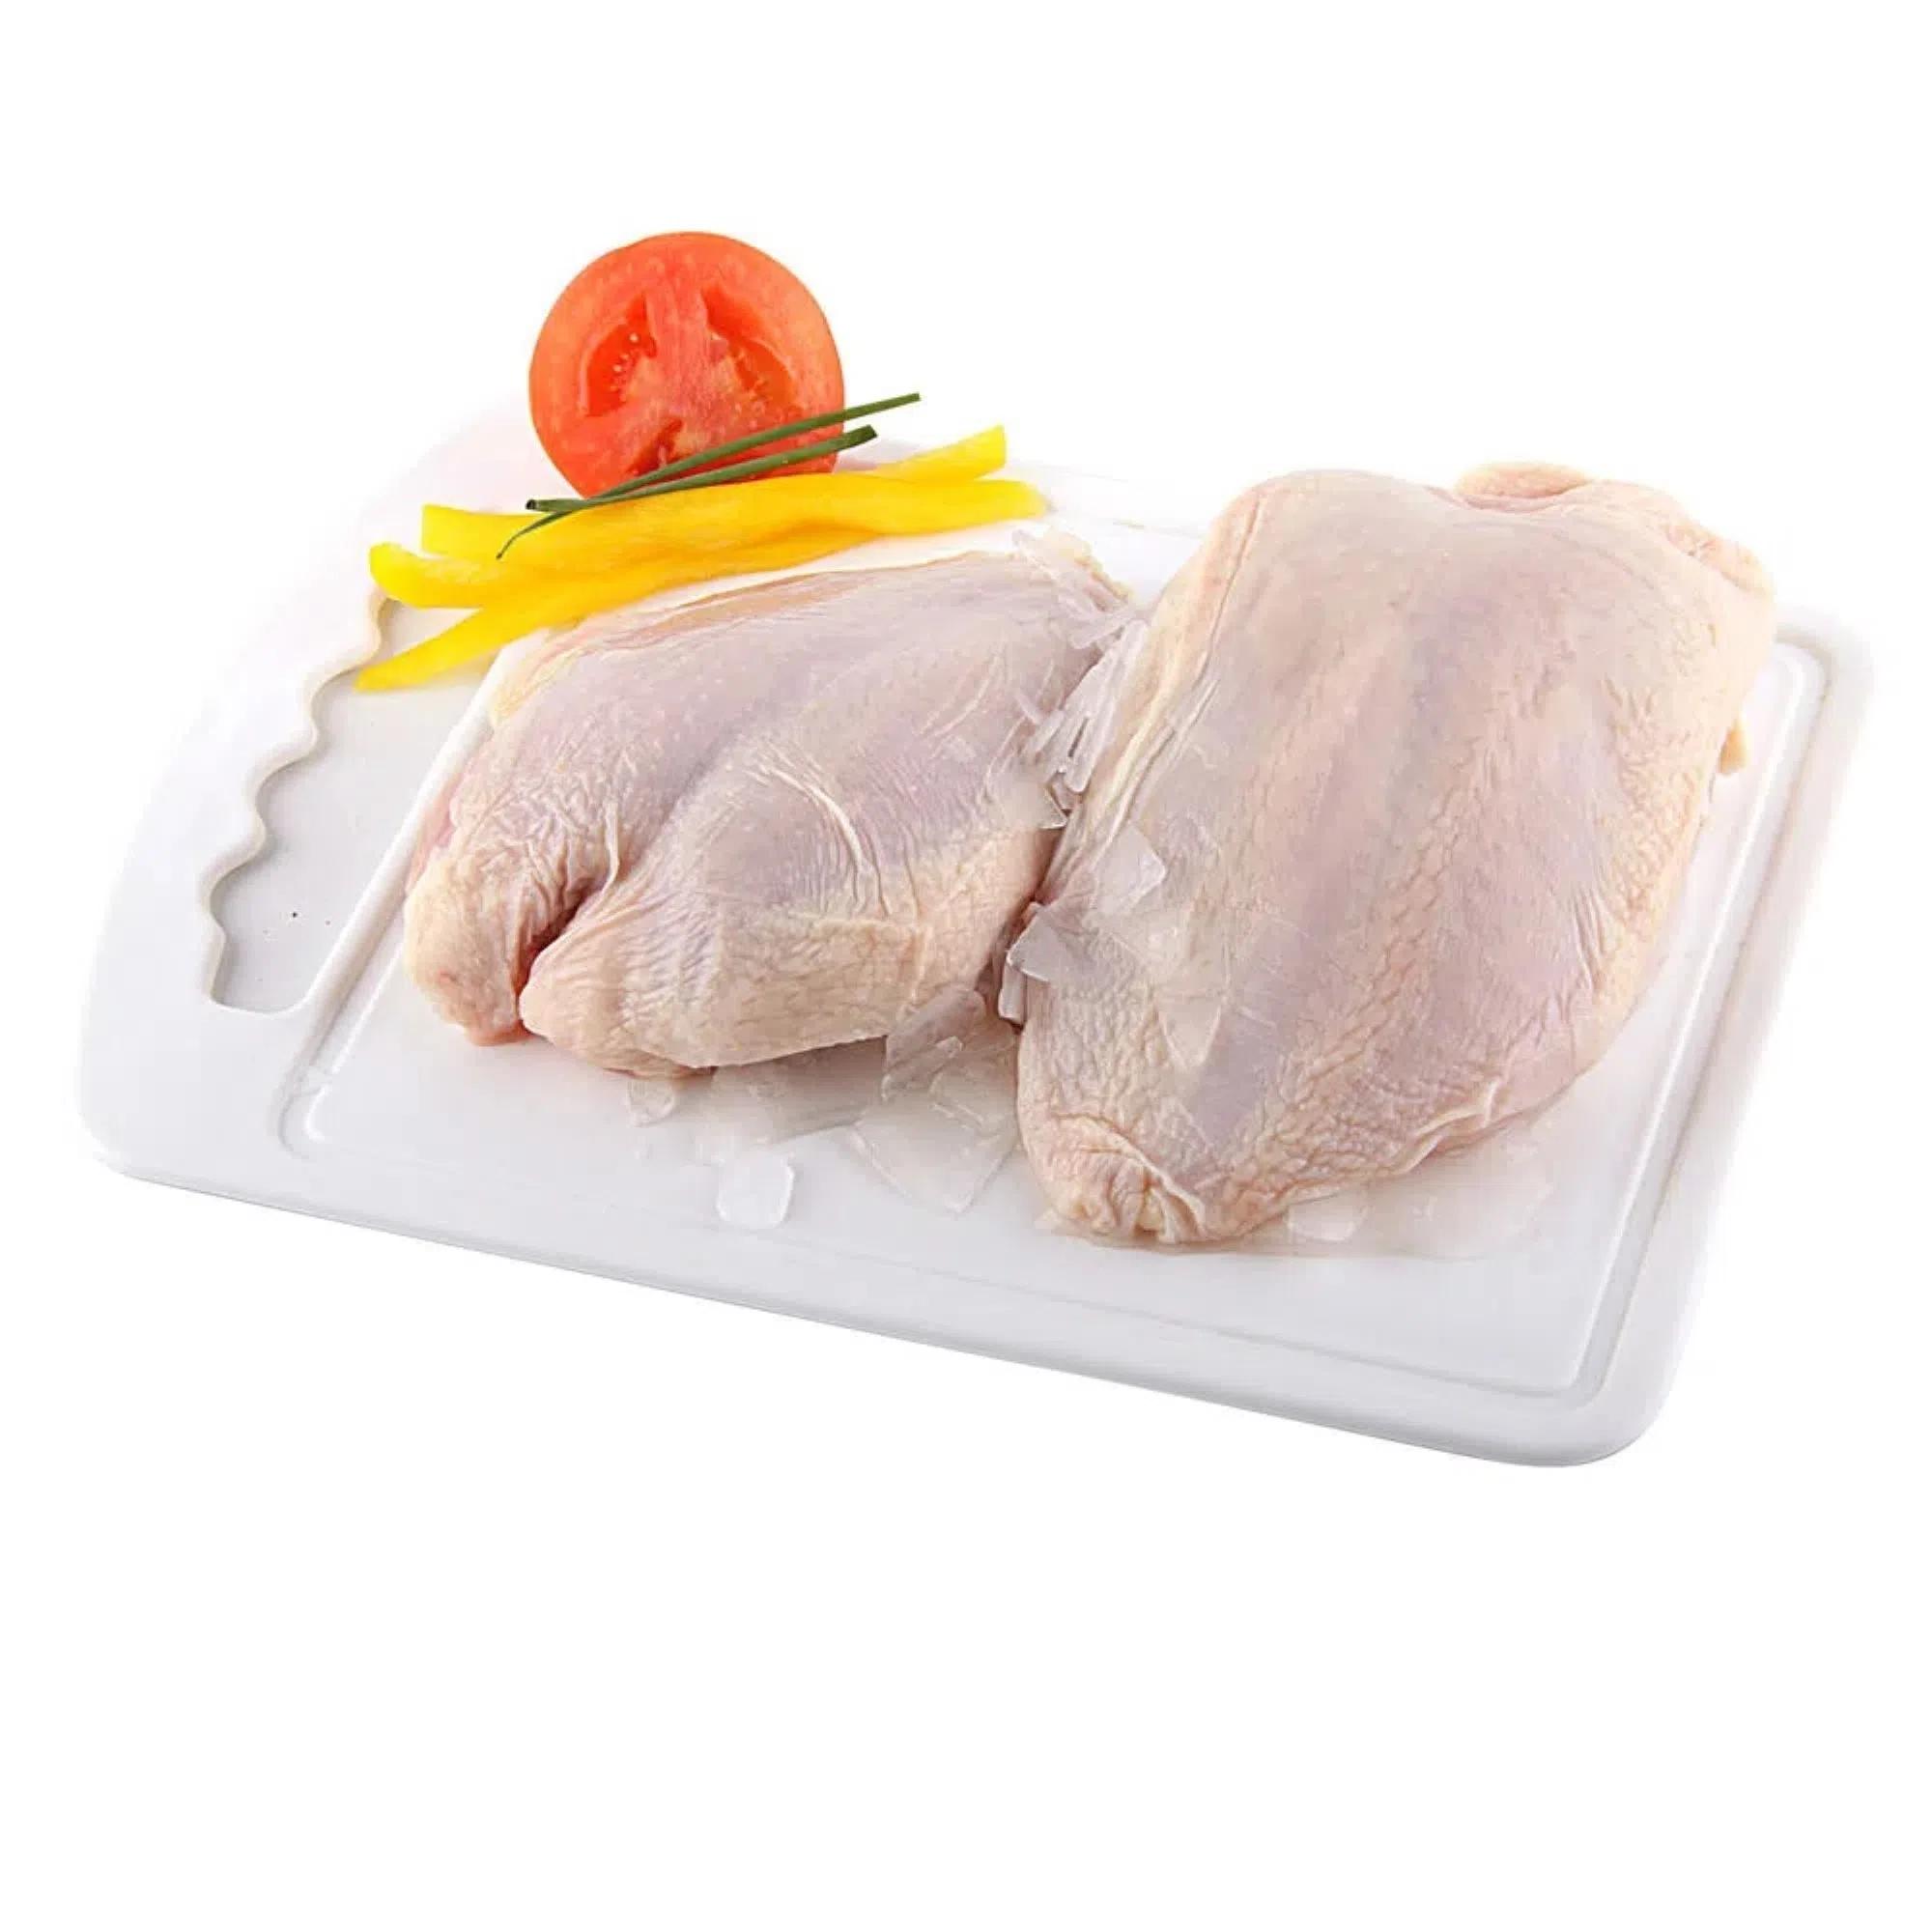 carne de gallo flete pechuga sasonada de pimienta cpongelada - Cuánto está el kilo de filete de pollo